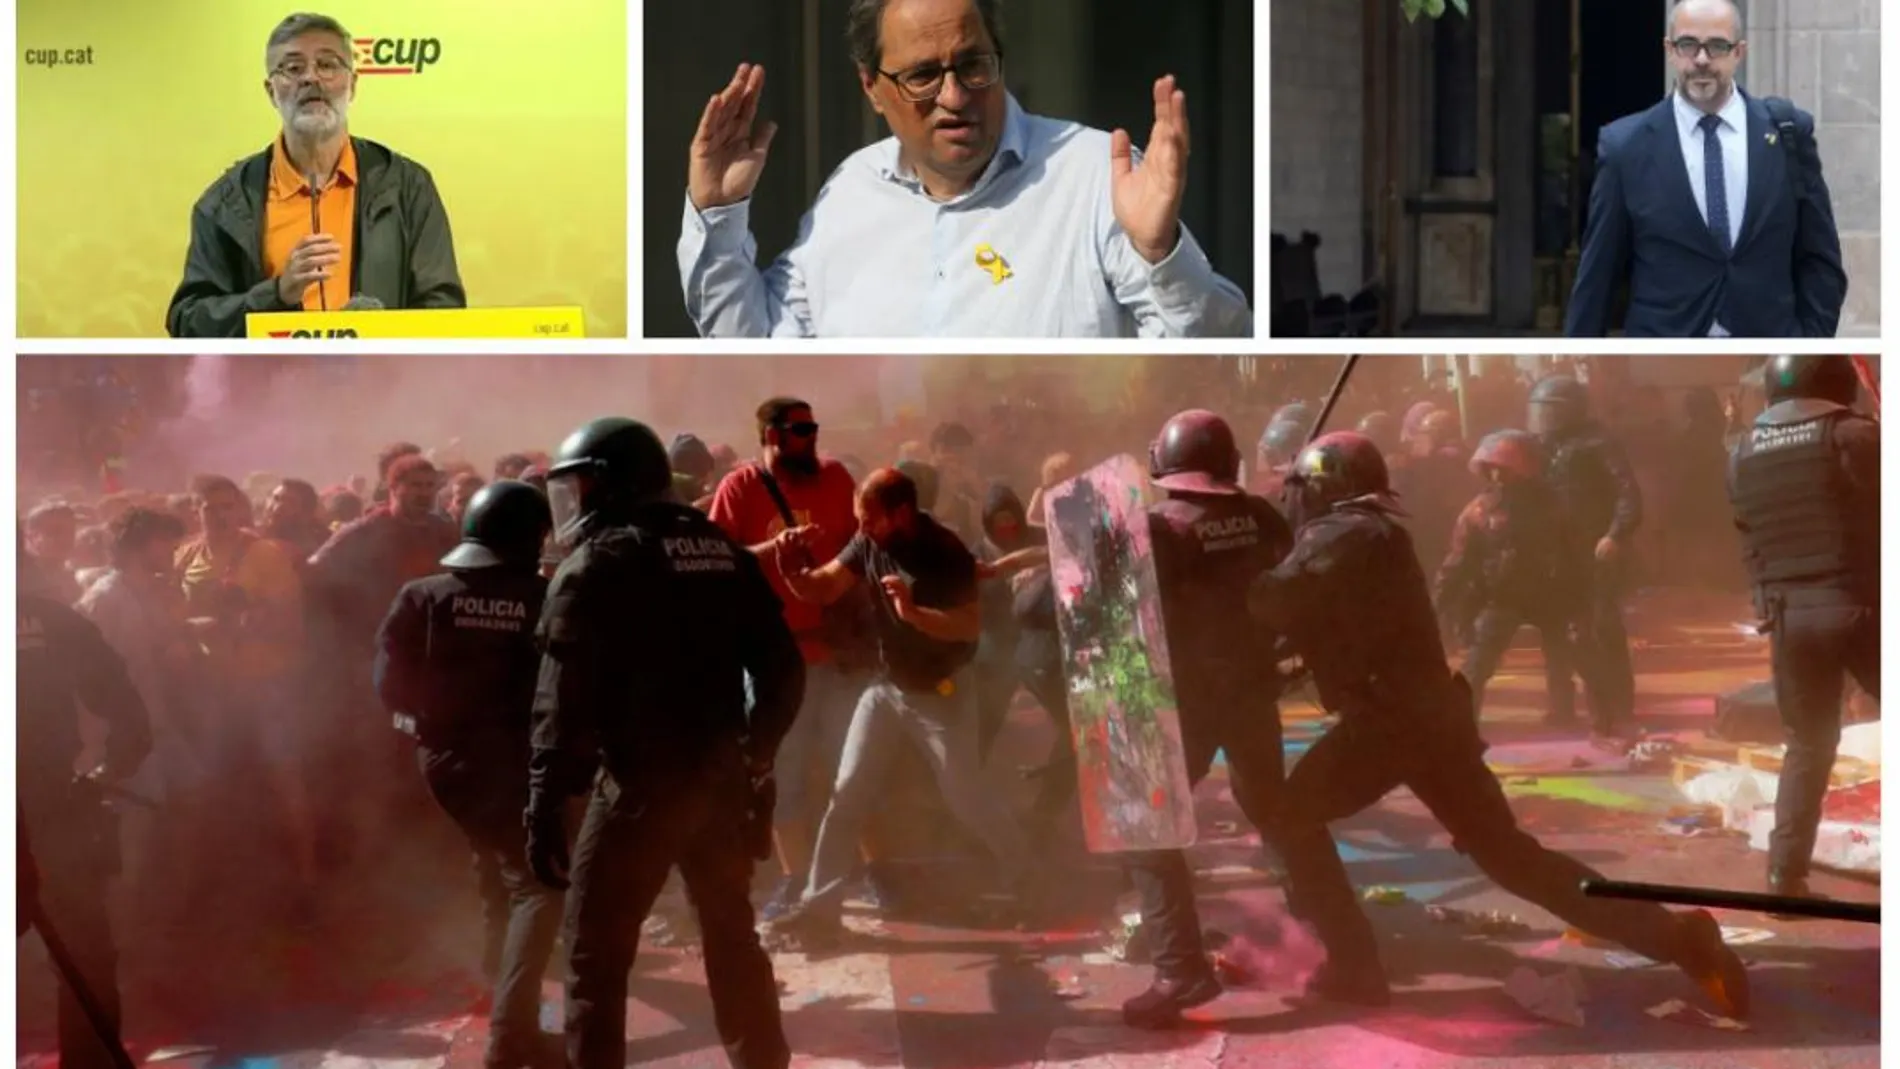 Los mossos cargaron contra los separatistas ayer en Barcelona